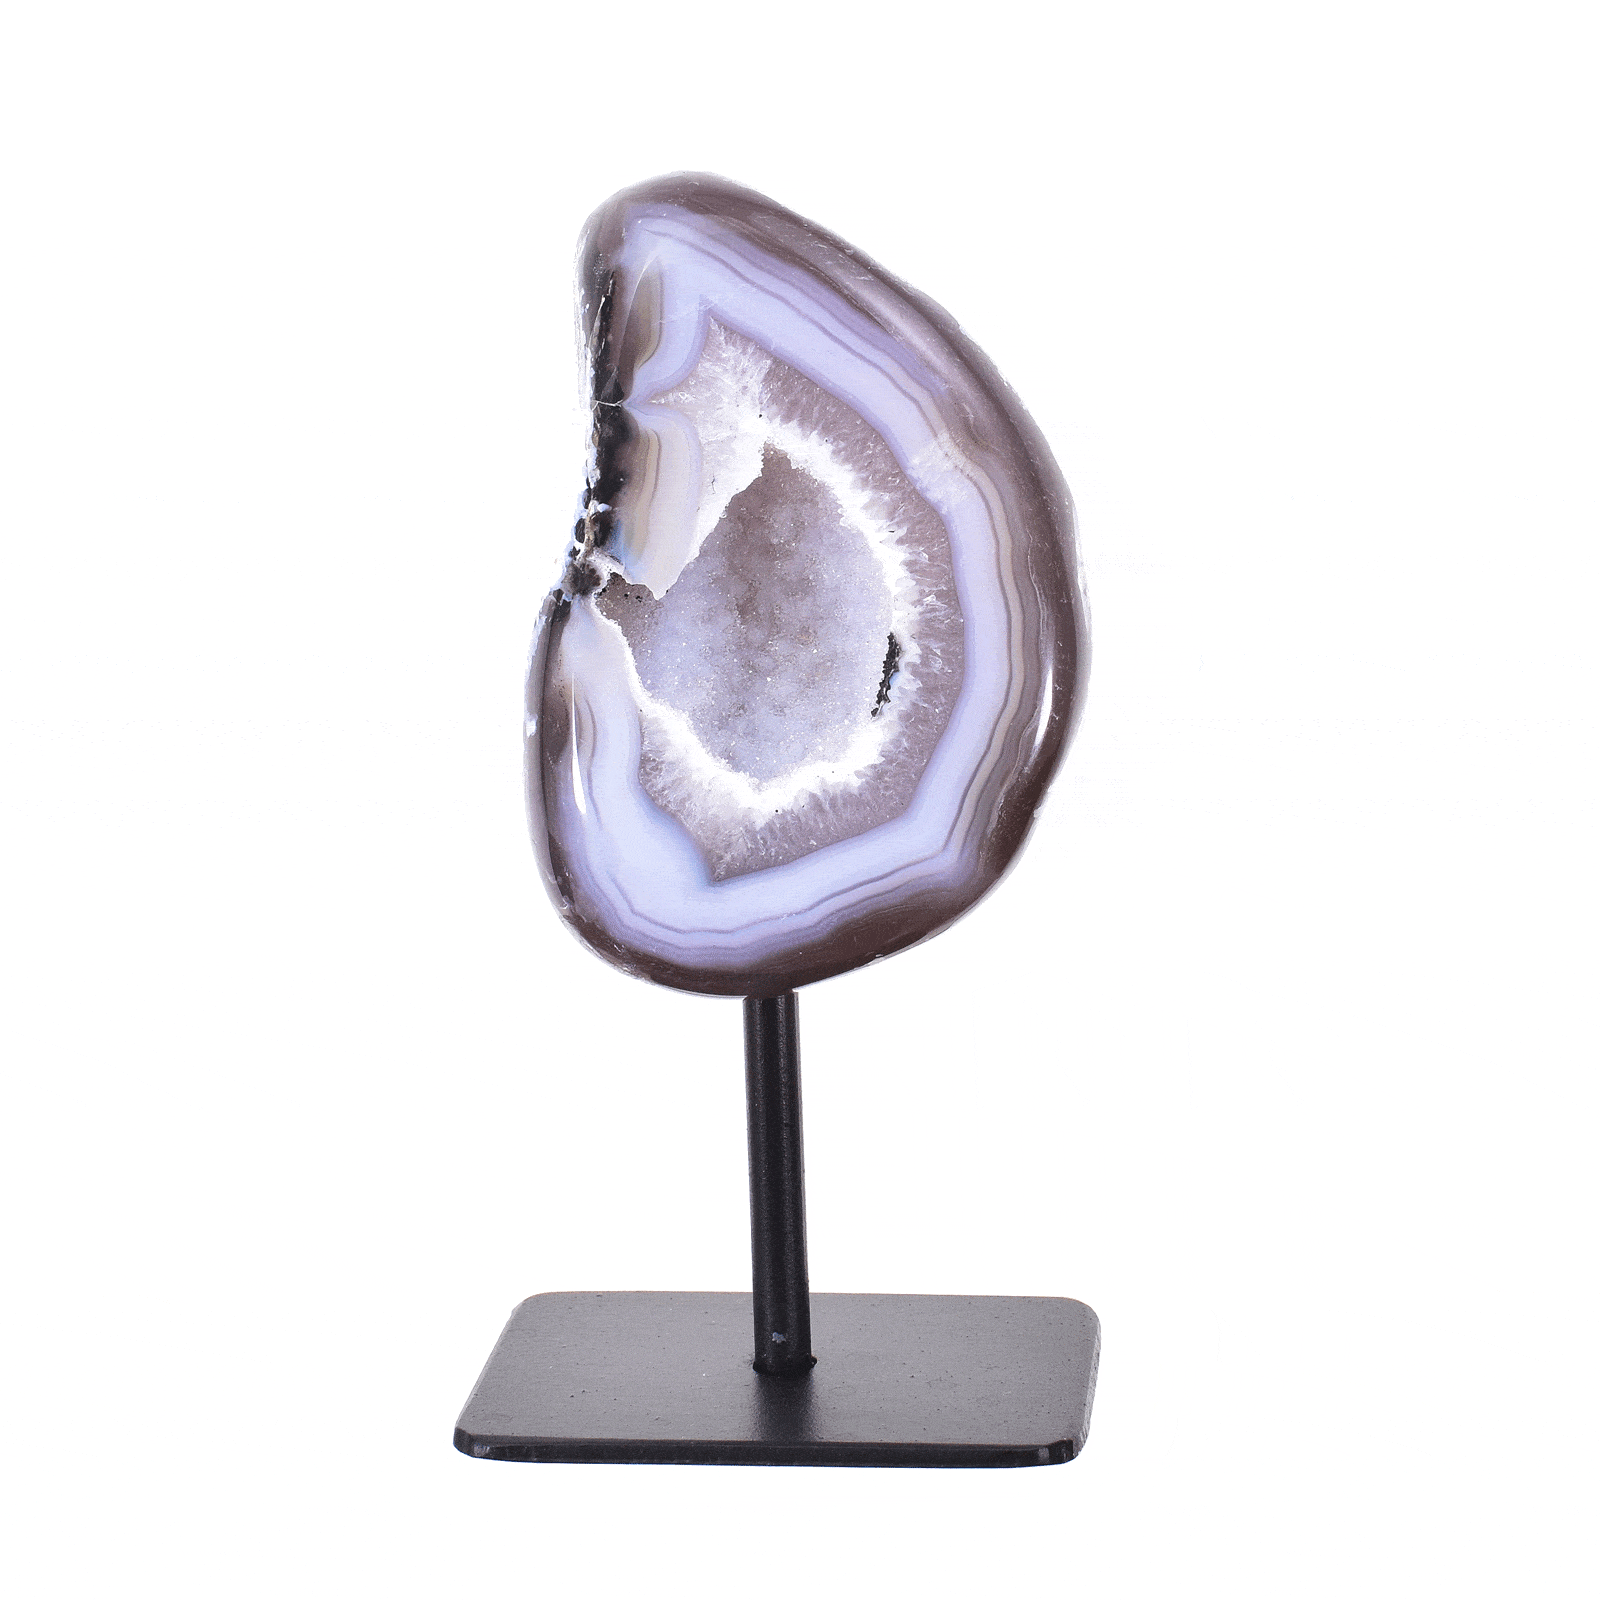 Γεώδες φυσικής πέτρας αχάτη με κρύσταλλα χαλαζία στο εσωτερικό του. Ο αχάτης είναι ενσωματωμένος σε μαύρη μεταλλική βάση και το προϊόν έχει ύψος 14cm. Αγοράστε online shop.